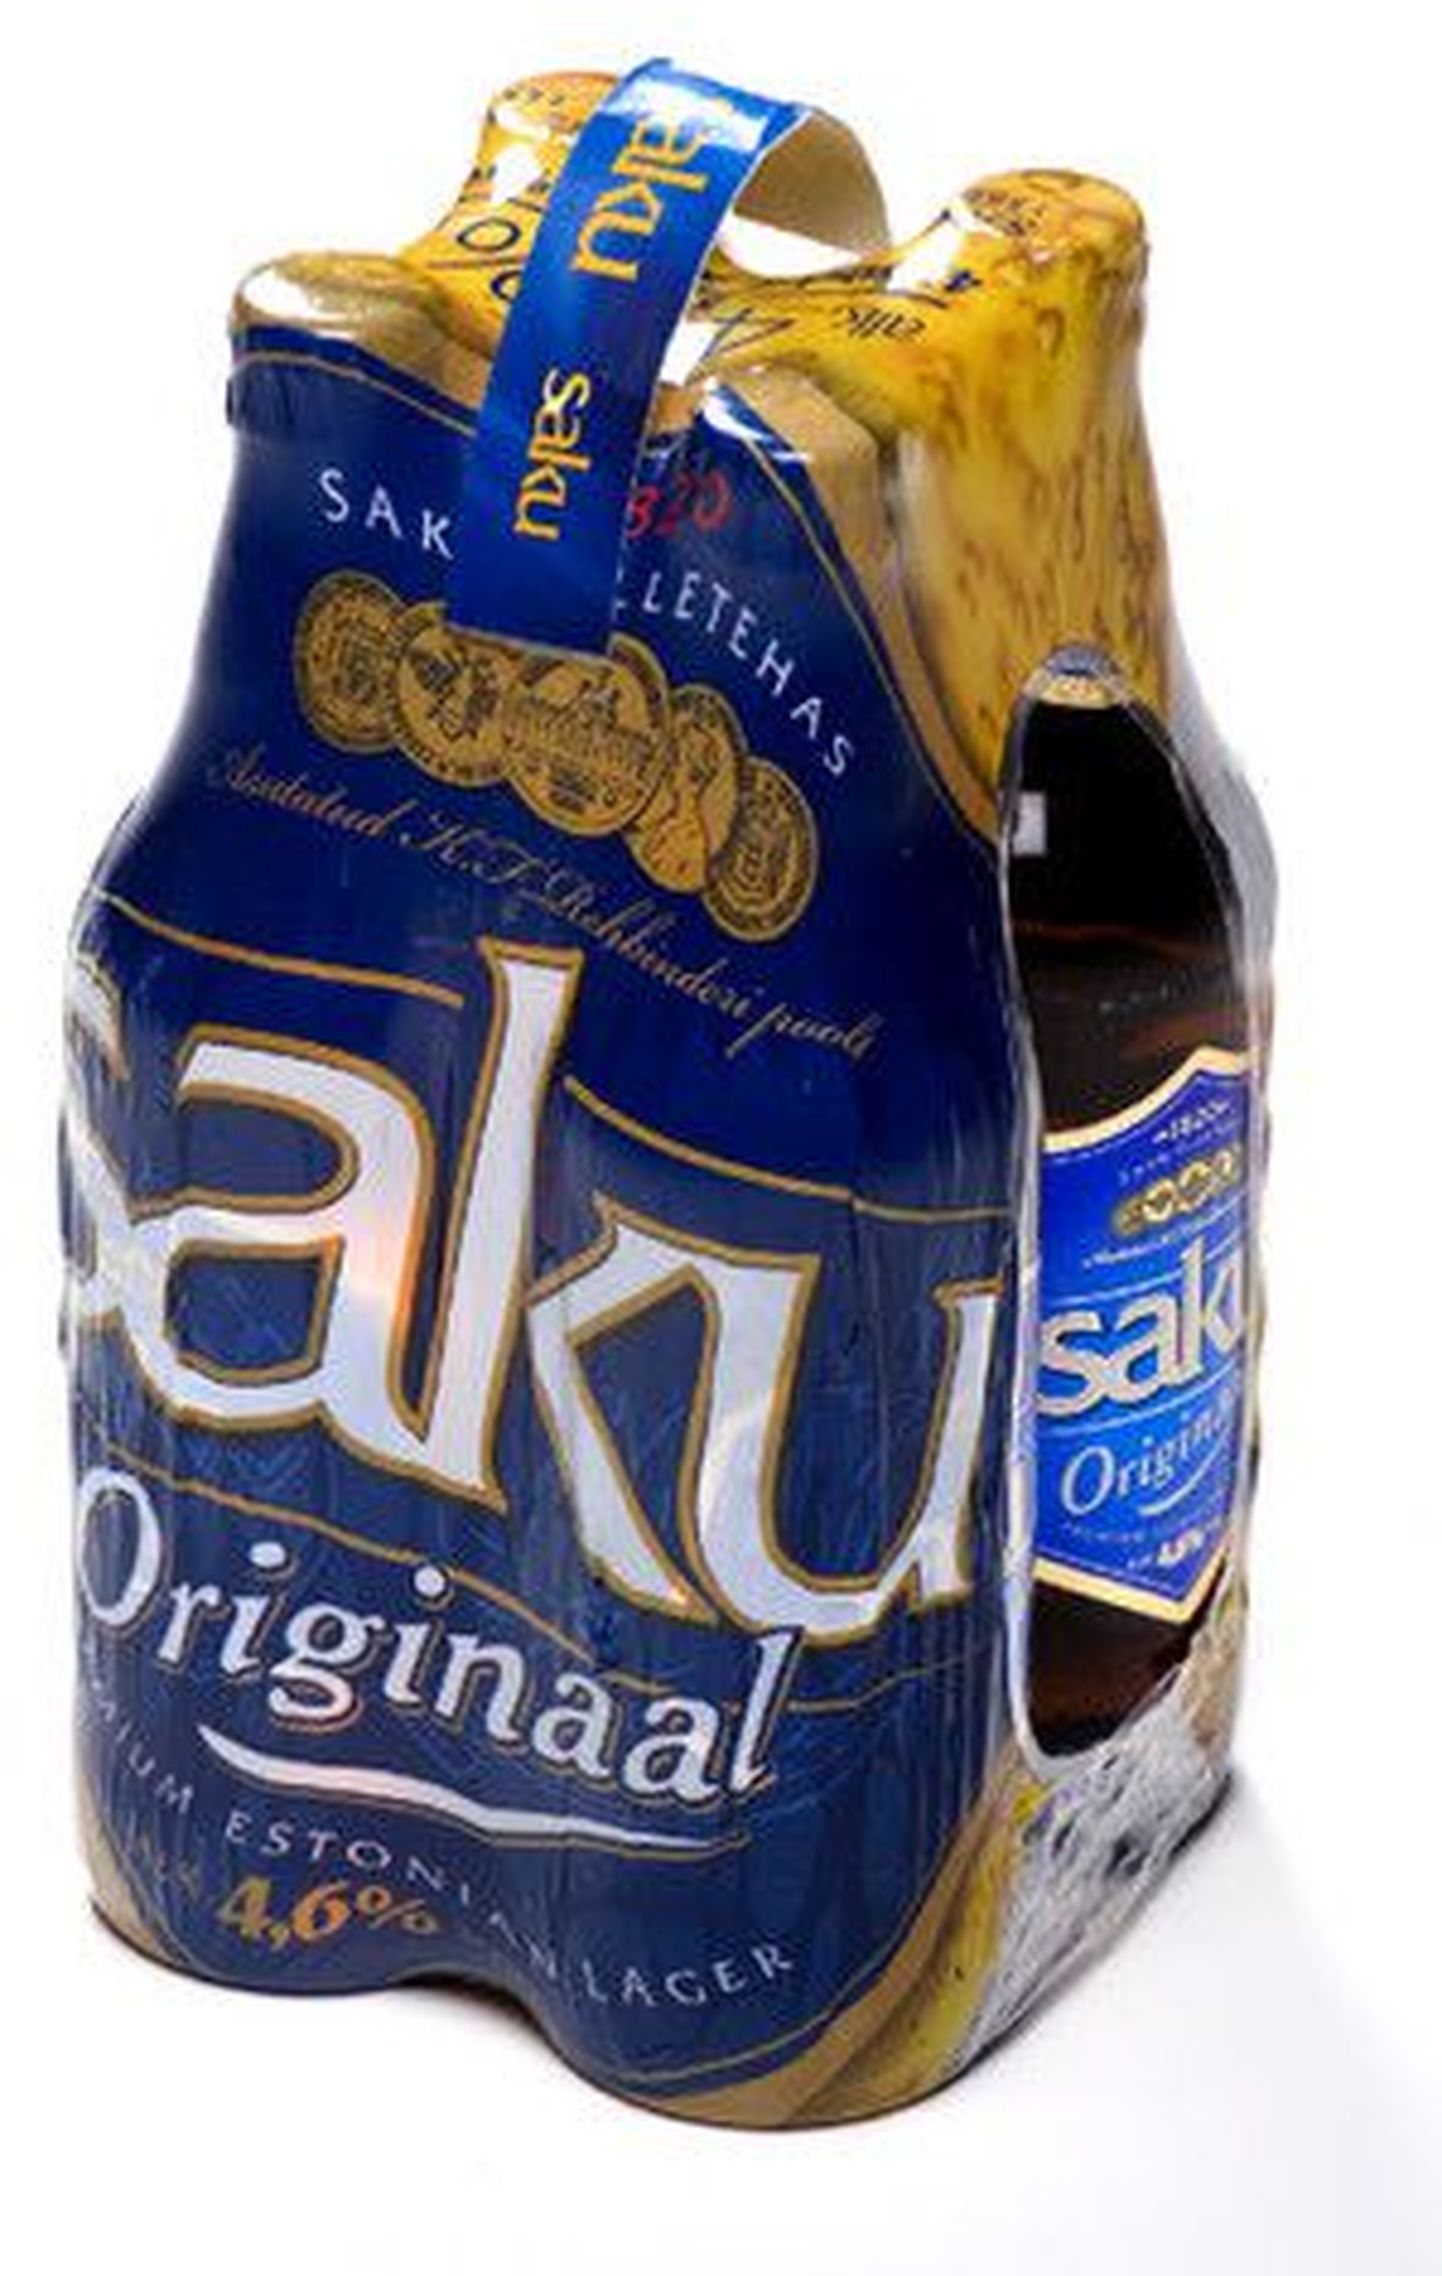 пиво Saku.